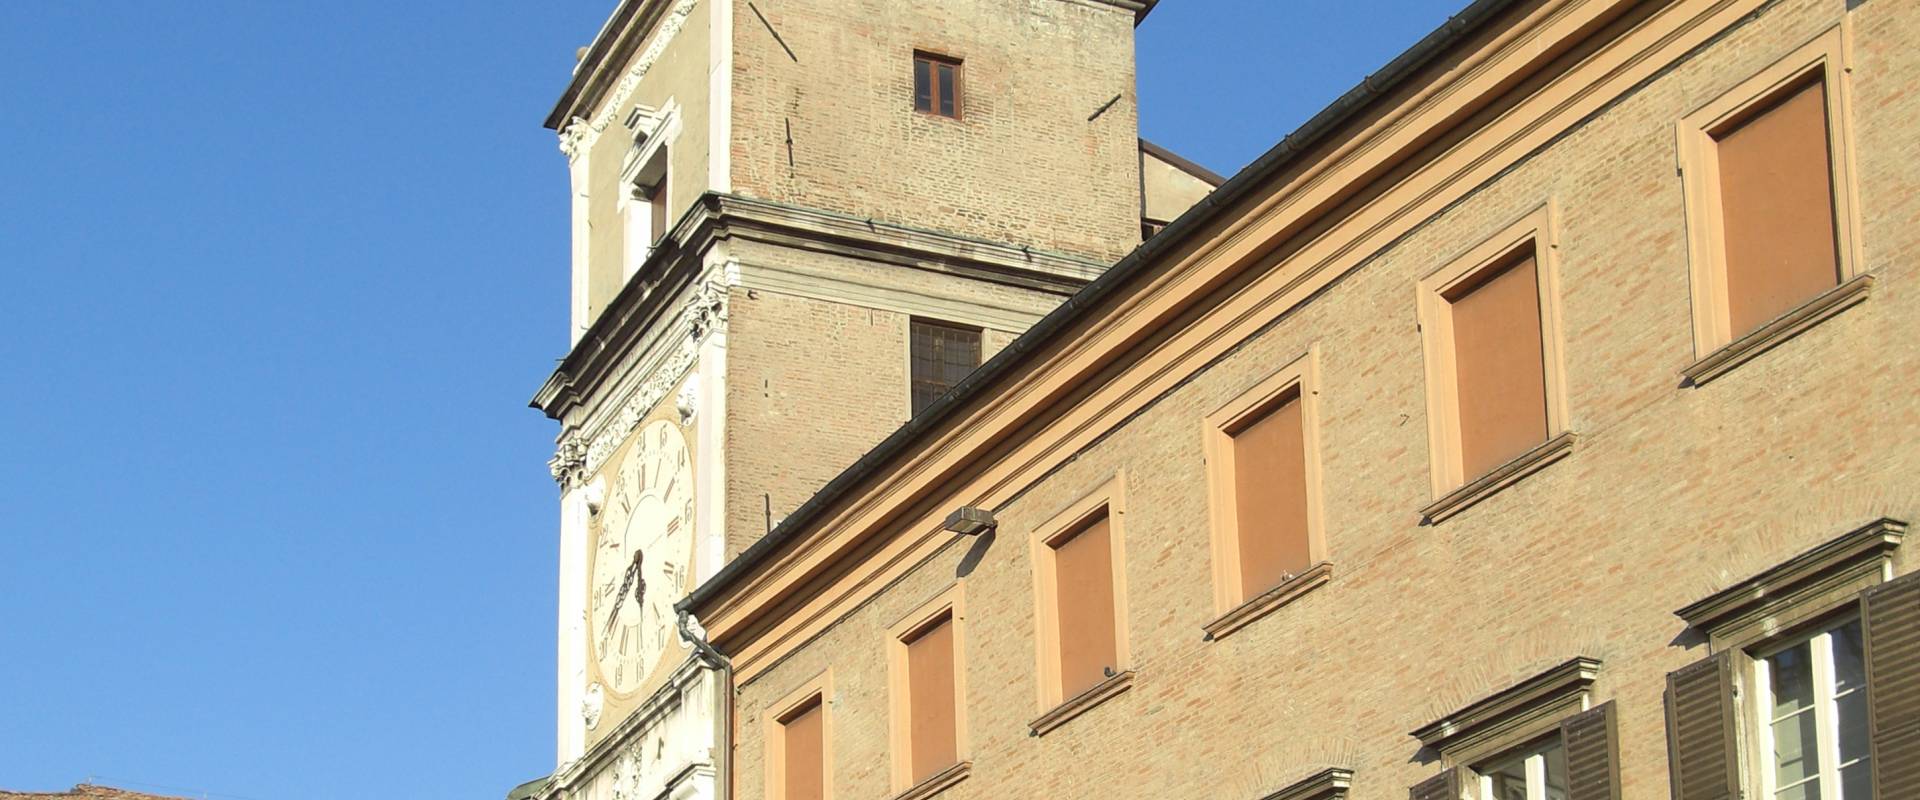 Palazzo Comunale di Modena vista laterale foto di Matteolel